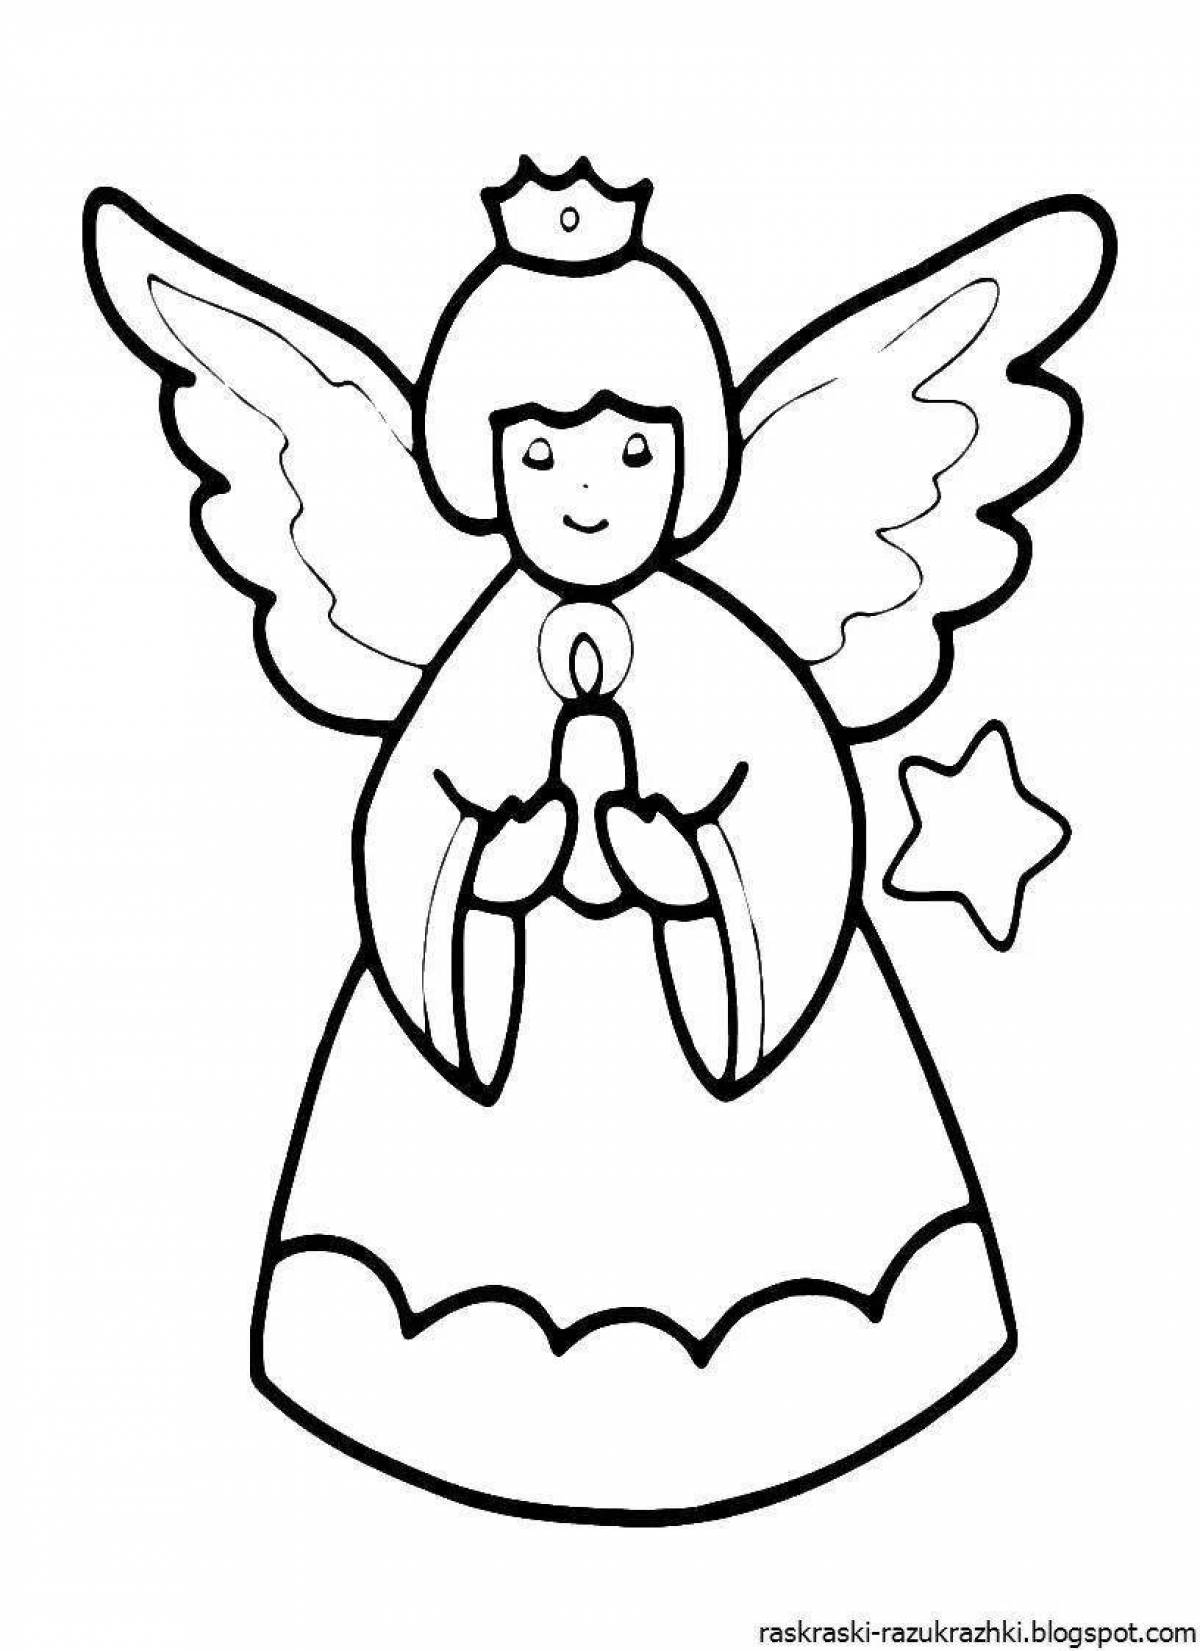 Радостный ангел раскраски для детей